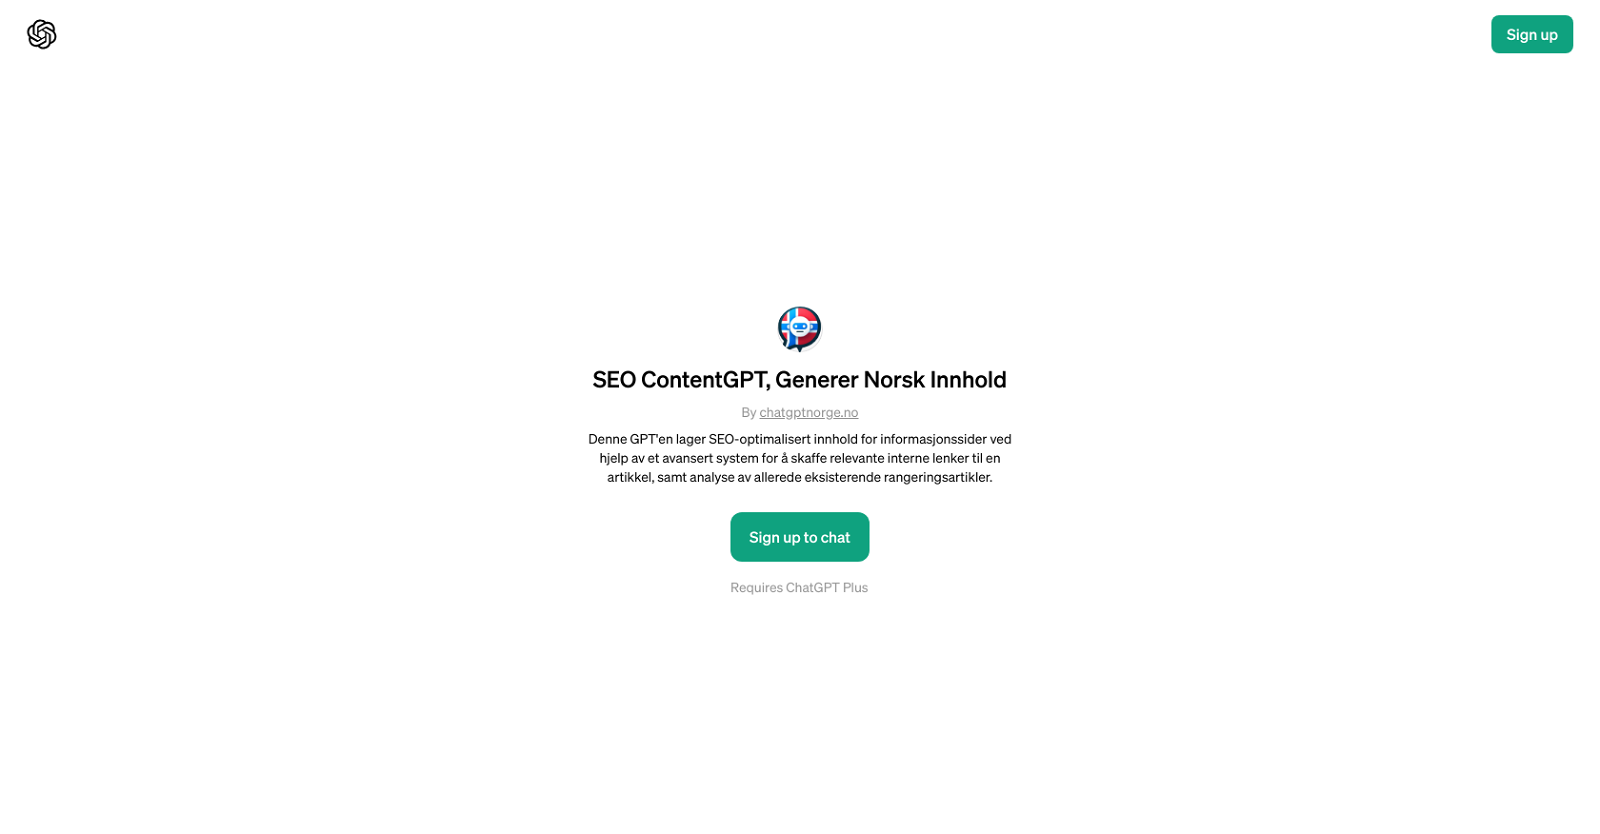 SEO ContentGPT, Generer Norsk Innhold website